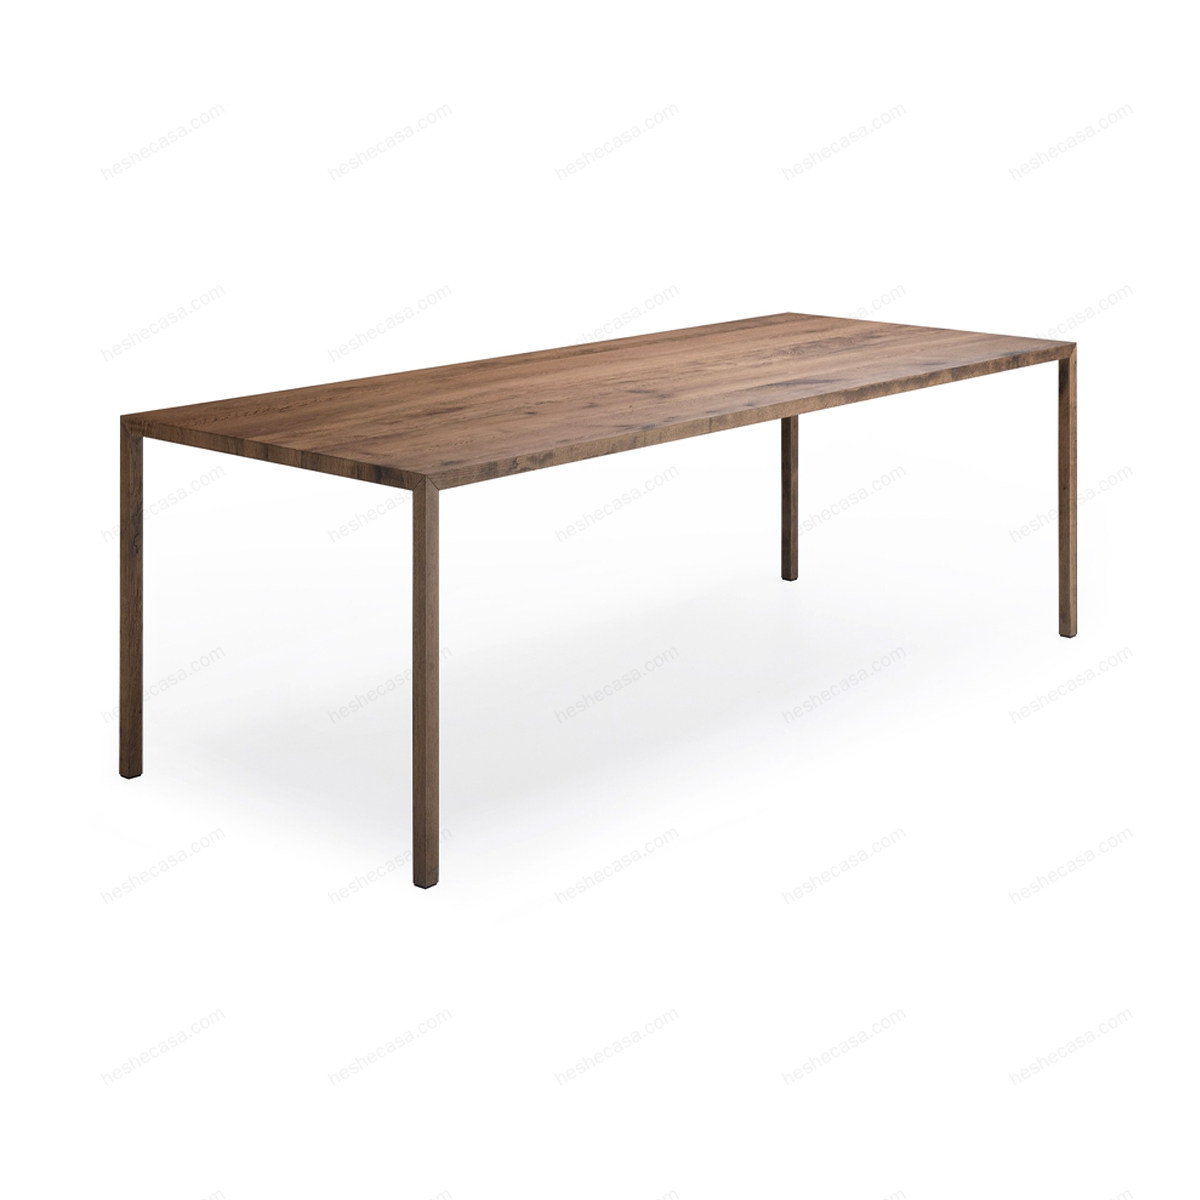 Tense Material Wood餐桌